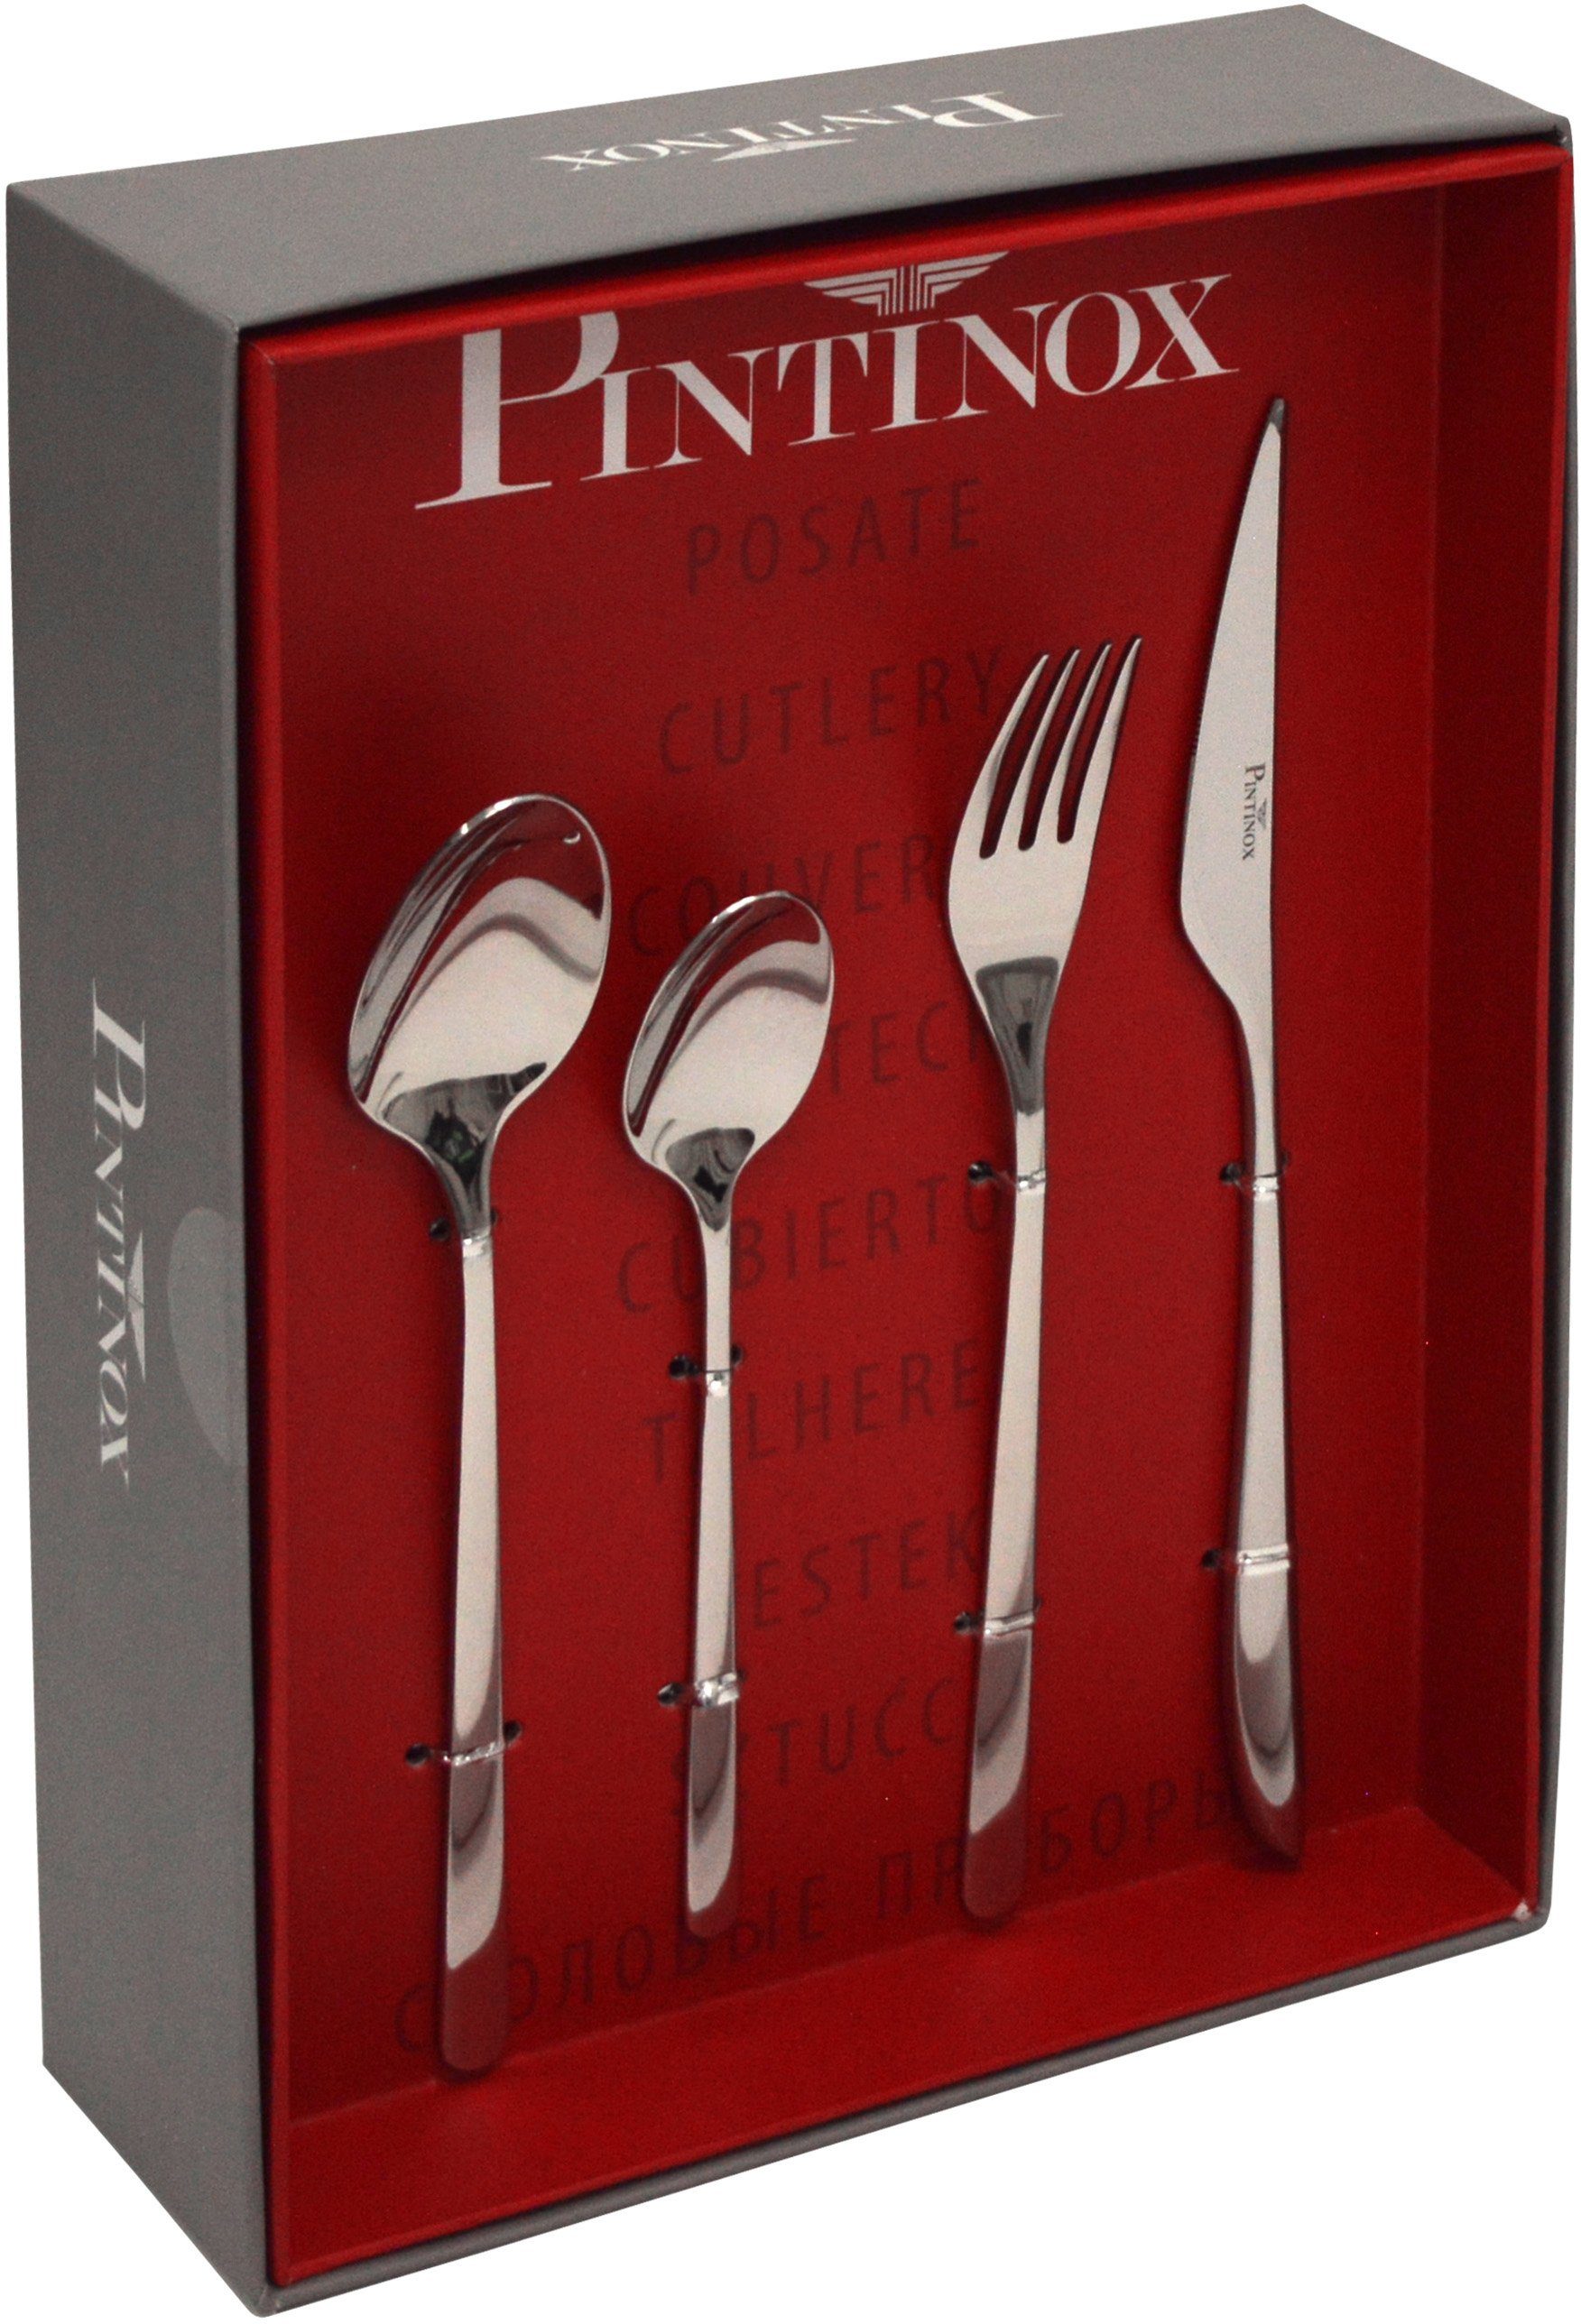 PINTINOX Besteck-Set »Florence«, 24-teilig, Edelstahl 18/10,  spülmaschinengeeignet online kaufen | OTTO